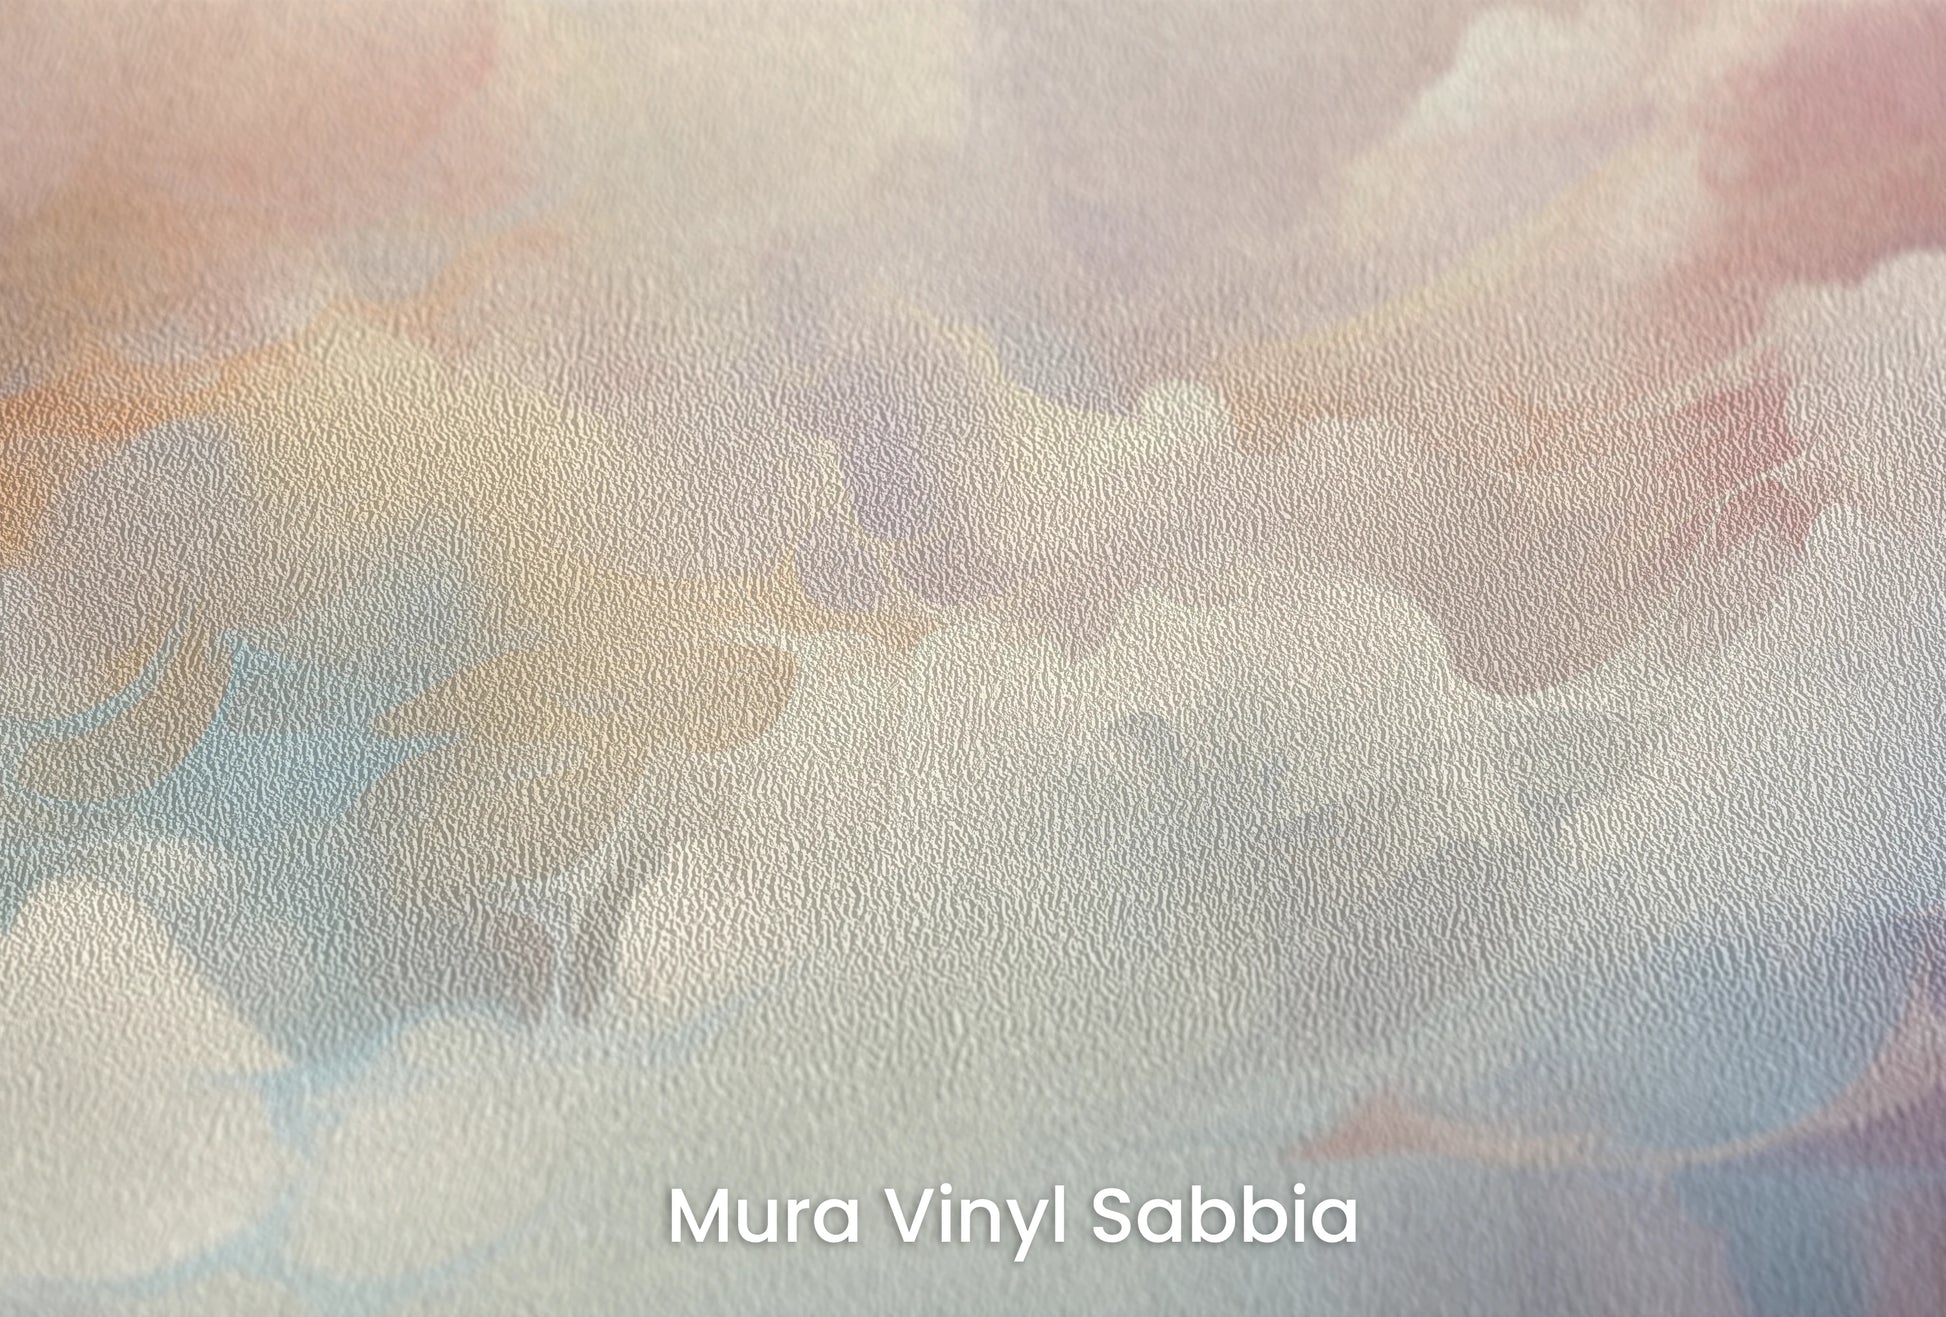 Zbliżenie na artystyczną fototapetę o nazwie Misty Pastels na podłożu Mura Vinyl Sabbia struktura grubego ziarna piasku.